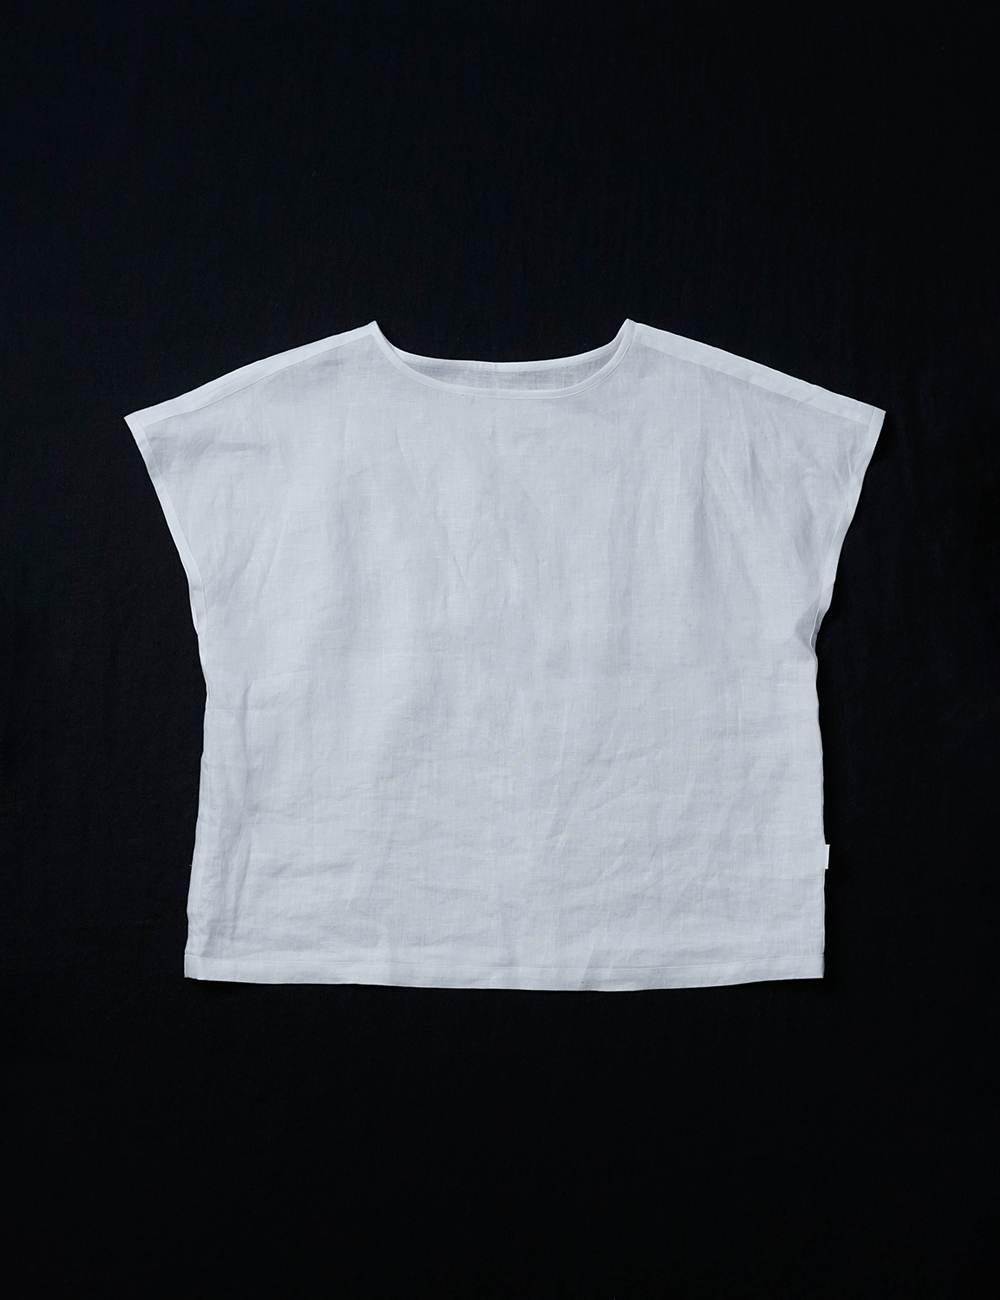 【リネントップス】肌の琴線に触れる！敏感肌フレンチスリーブTシャツ / 白色 t055a-wht1